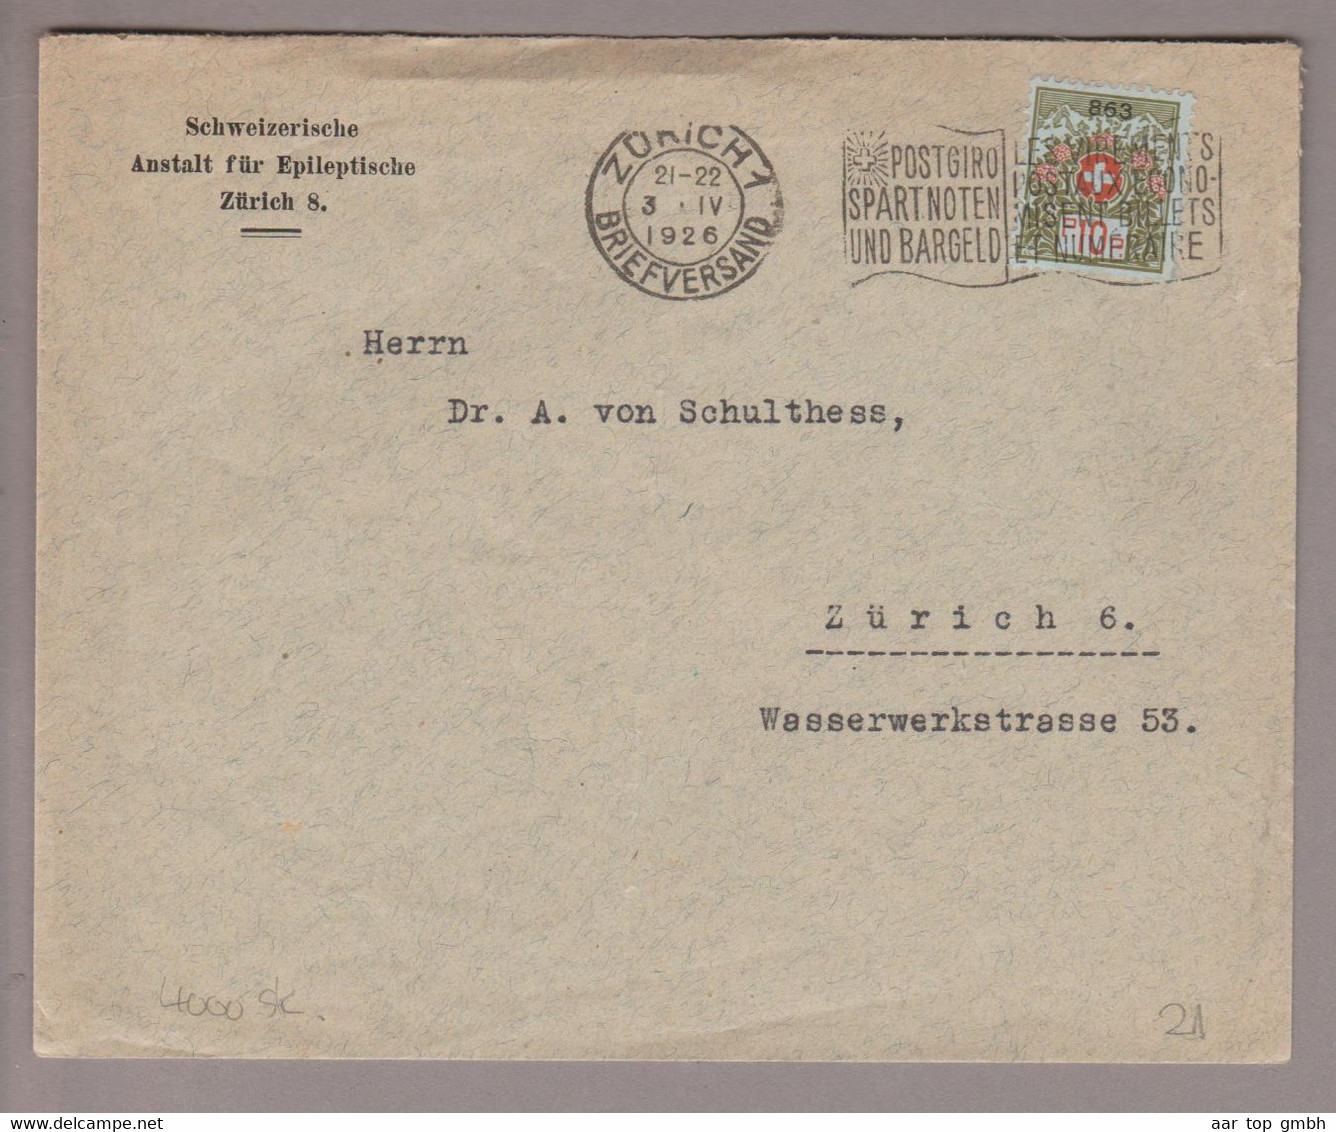 CH Portofreiheit Zu#9 10Rp. GR#863 Brief 1926-04-03 Zürich Schweiz. Anstalt F.Epileptische Zürich8 - Portofreiheit